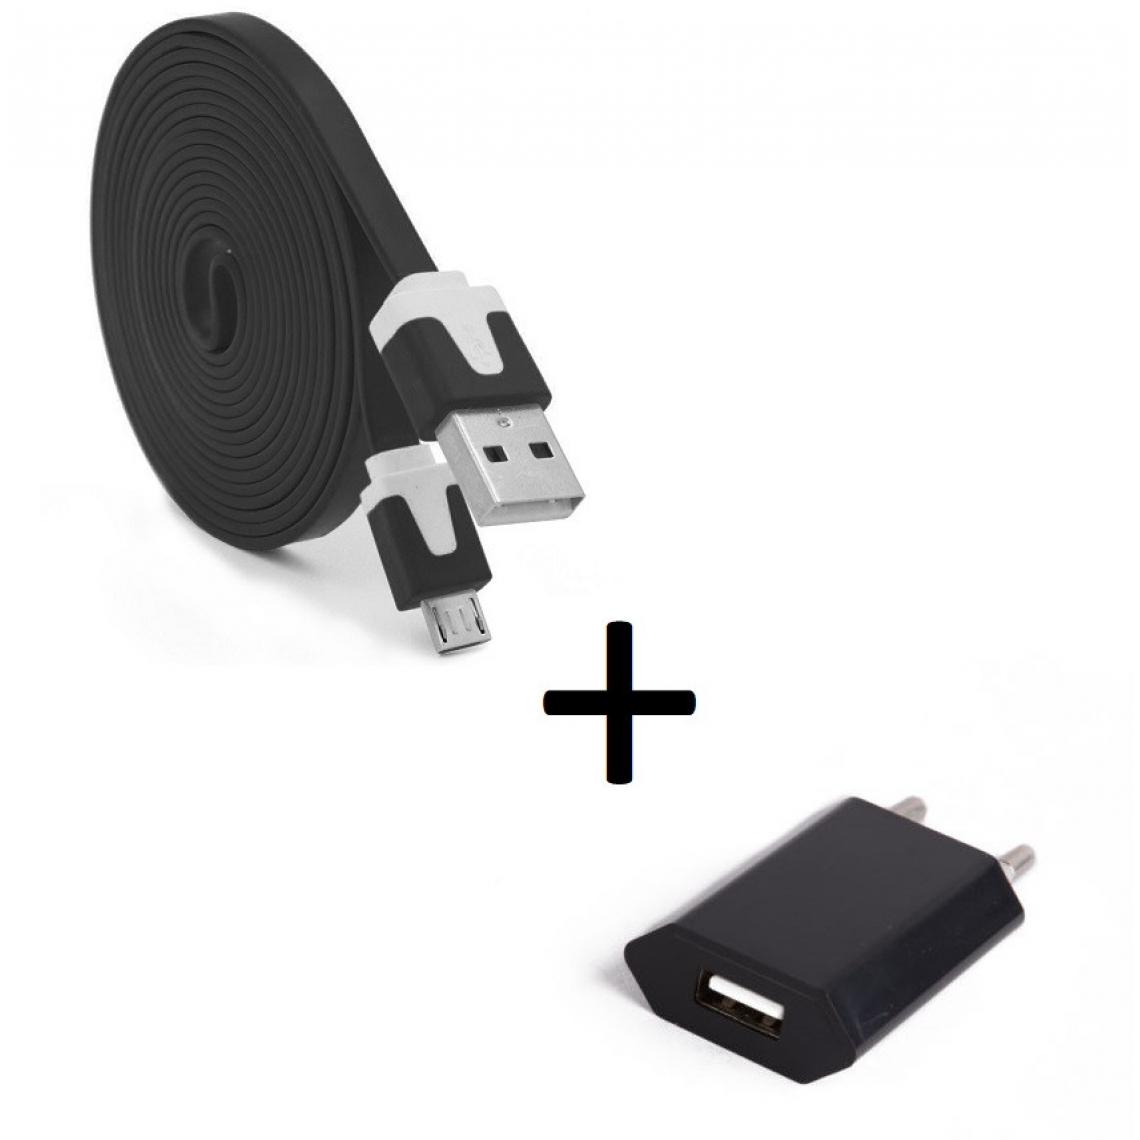 Shot - Pack Chargeur pour GIONEE F9 PLUS Micro USB (Cable Noodle 3m + Prise Secteur Couleur USB) Android (NOIR) - Chargeur secteur téléphone